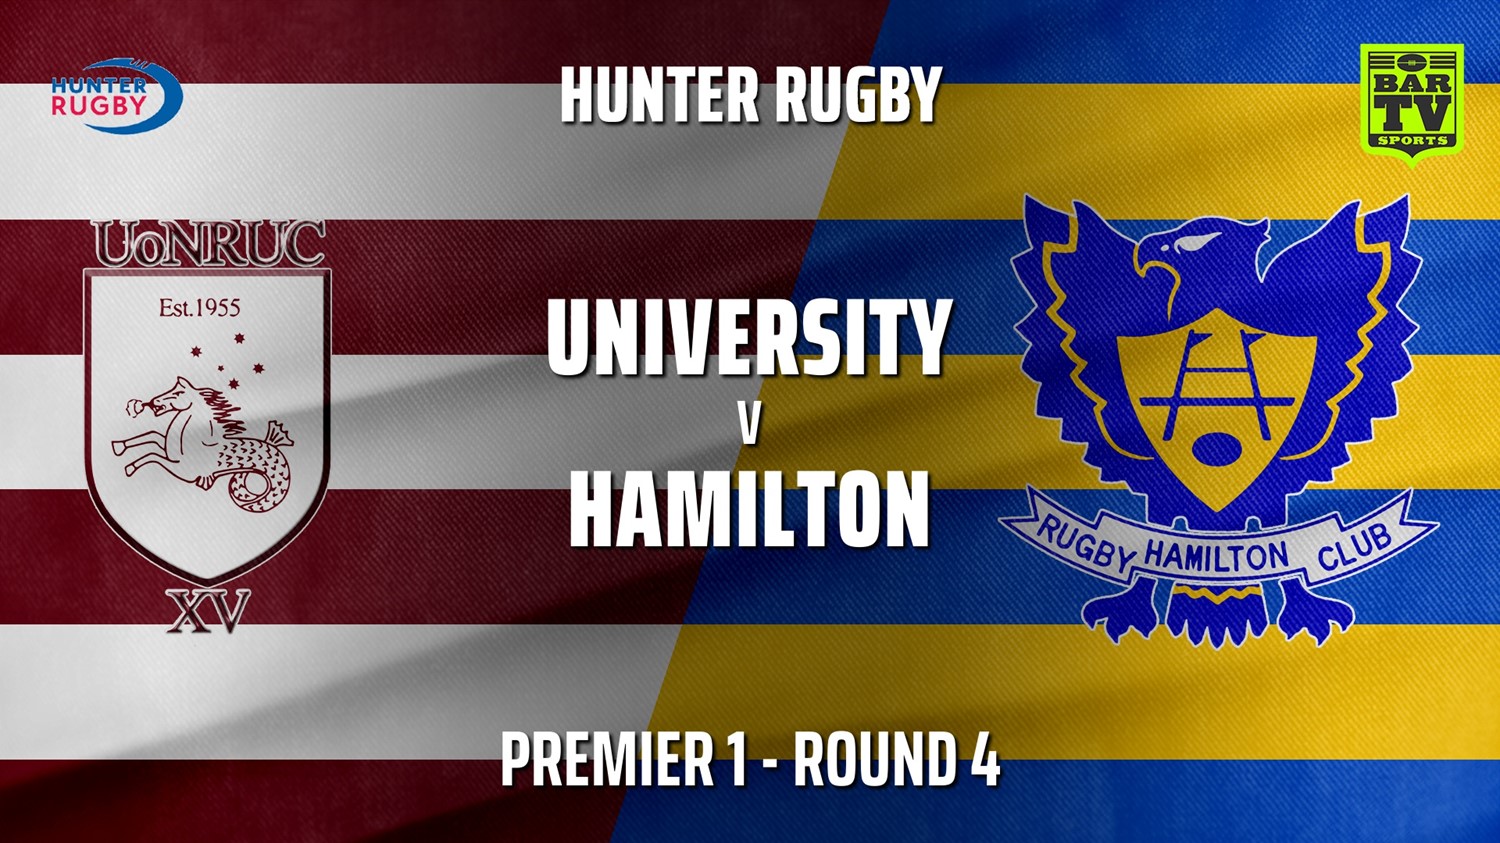 210508-HRU Round 4 - Premier 1 - University Of Newcastle v Hamilton Hawks Minigame Slate Image